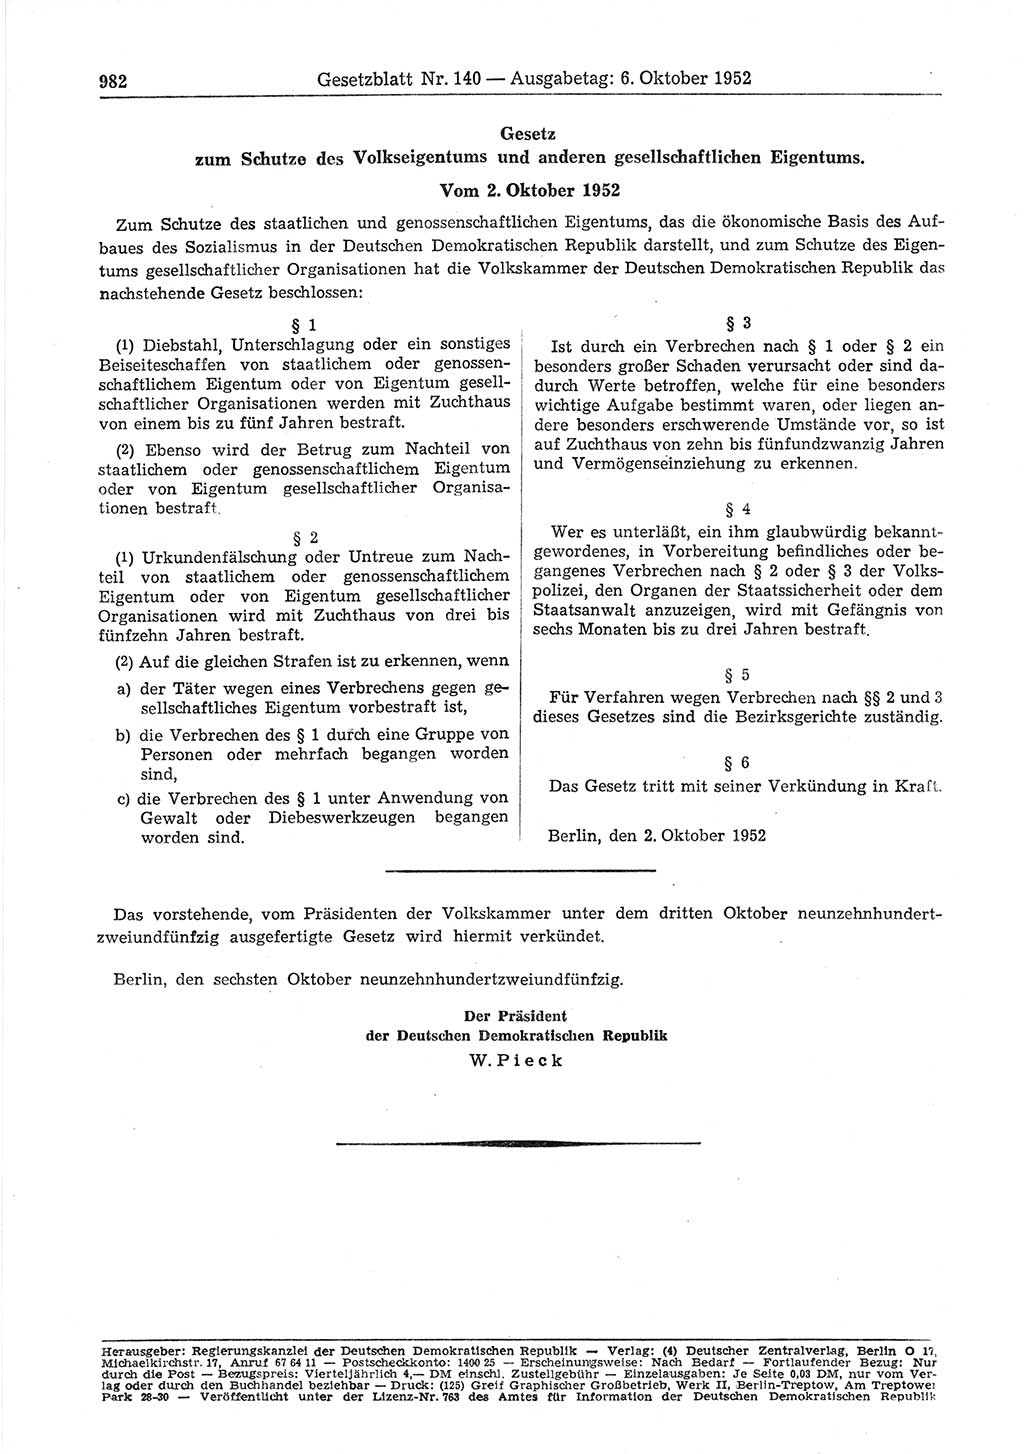 Gesetzblatt (GBl.) der Deutschen Demokratischen Republik (DDR) 1952, Seite 982 (GBl. DDR 1952, S. 982)